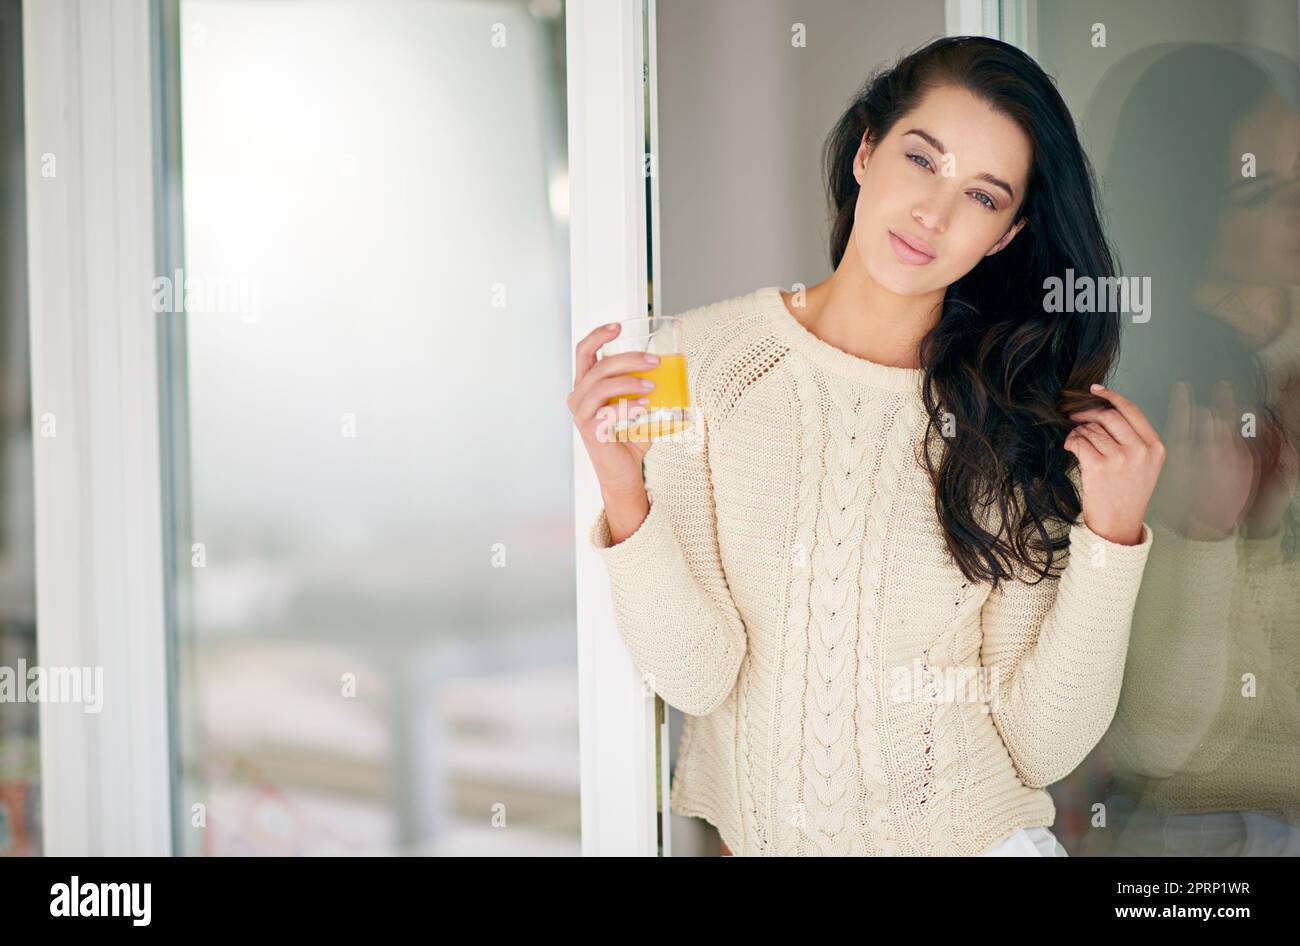 Questo sarà un fine settimana freddo. Ritratto della giovane donna che beve un bicchiere di succo a casa. Foto Stock